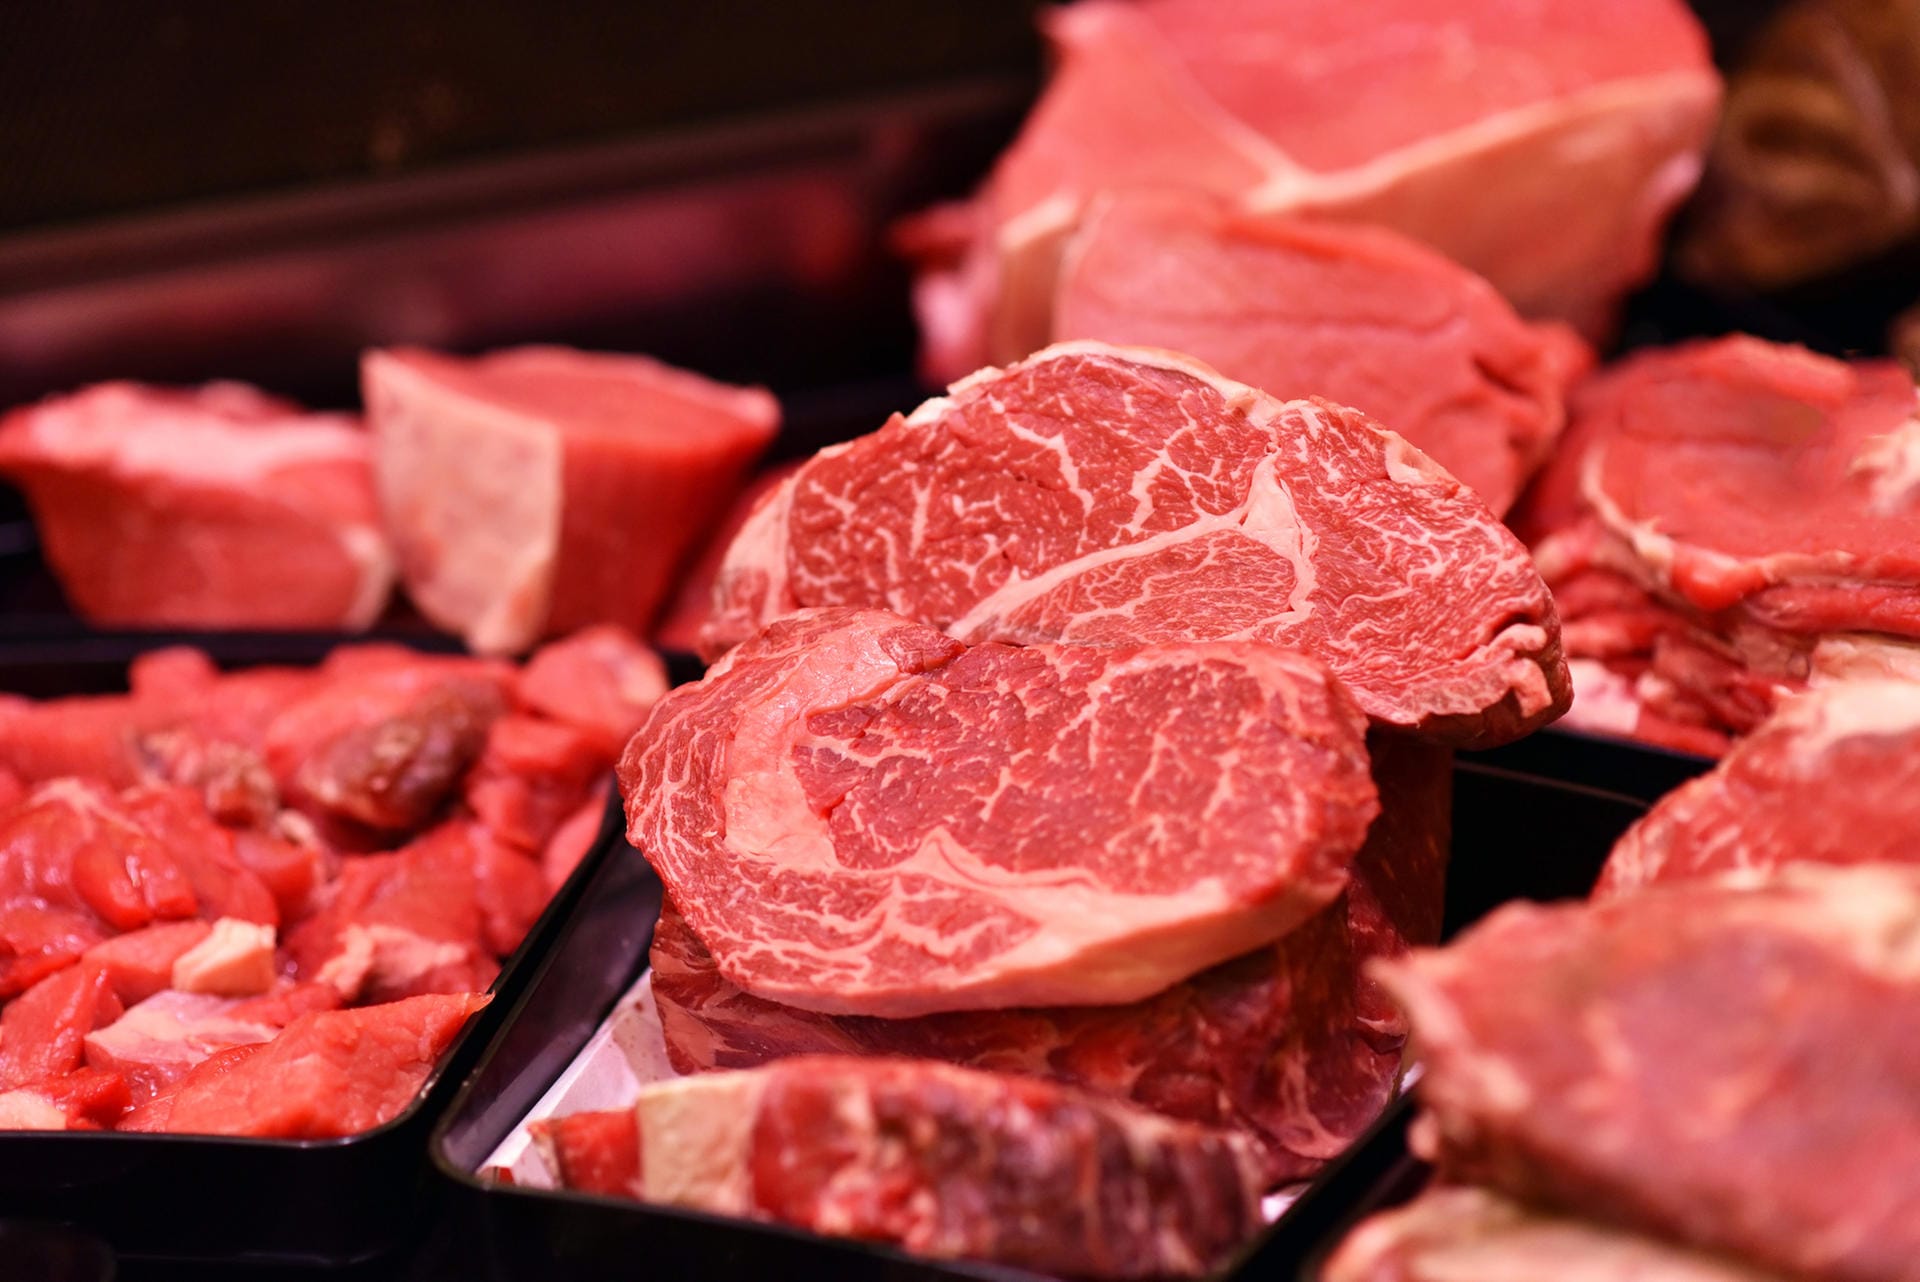 Zu viel Fleisch: Es gibt vielfältige Stoffwechselprozesse, die Gelenkbeschwerden verursachen, wie beispielsweise eine zu hohe Harnsäurekonzentration im Körper. Ist dies der Fall, spricht man von der Stoffwechselerkrankung Gicht, die auch die Gelenke betrifft. Es bilden sich Harnsäurekristalle, die sich an Gelenken und im Gewebe ablagern und einen Gicht-Anfall auslösen können. Wer zu viel Fleisch, vor allem Schweinefleisch isst, hat häufig solche Probleme.